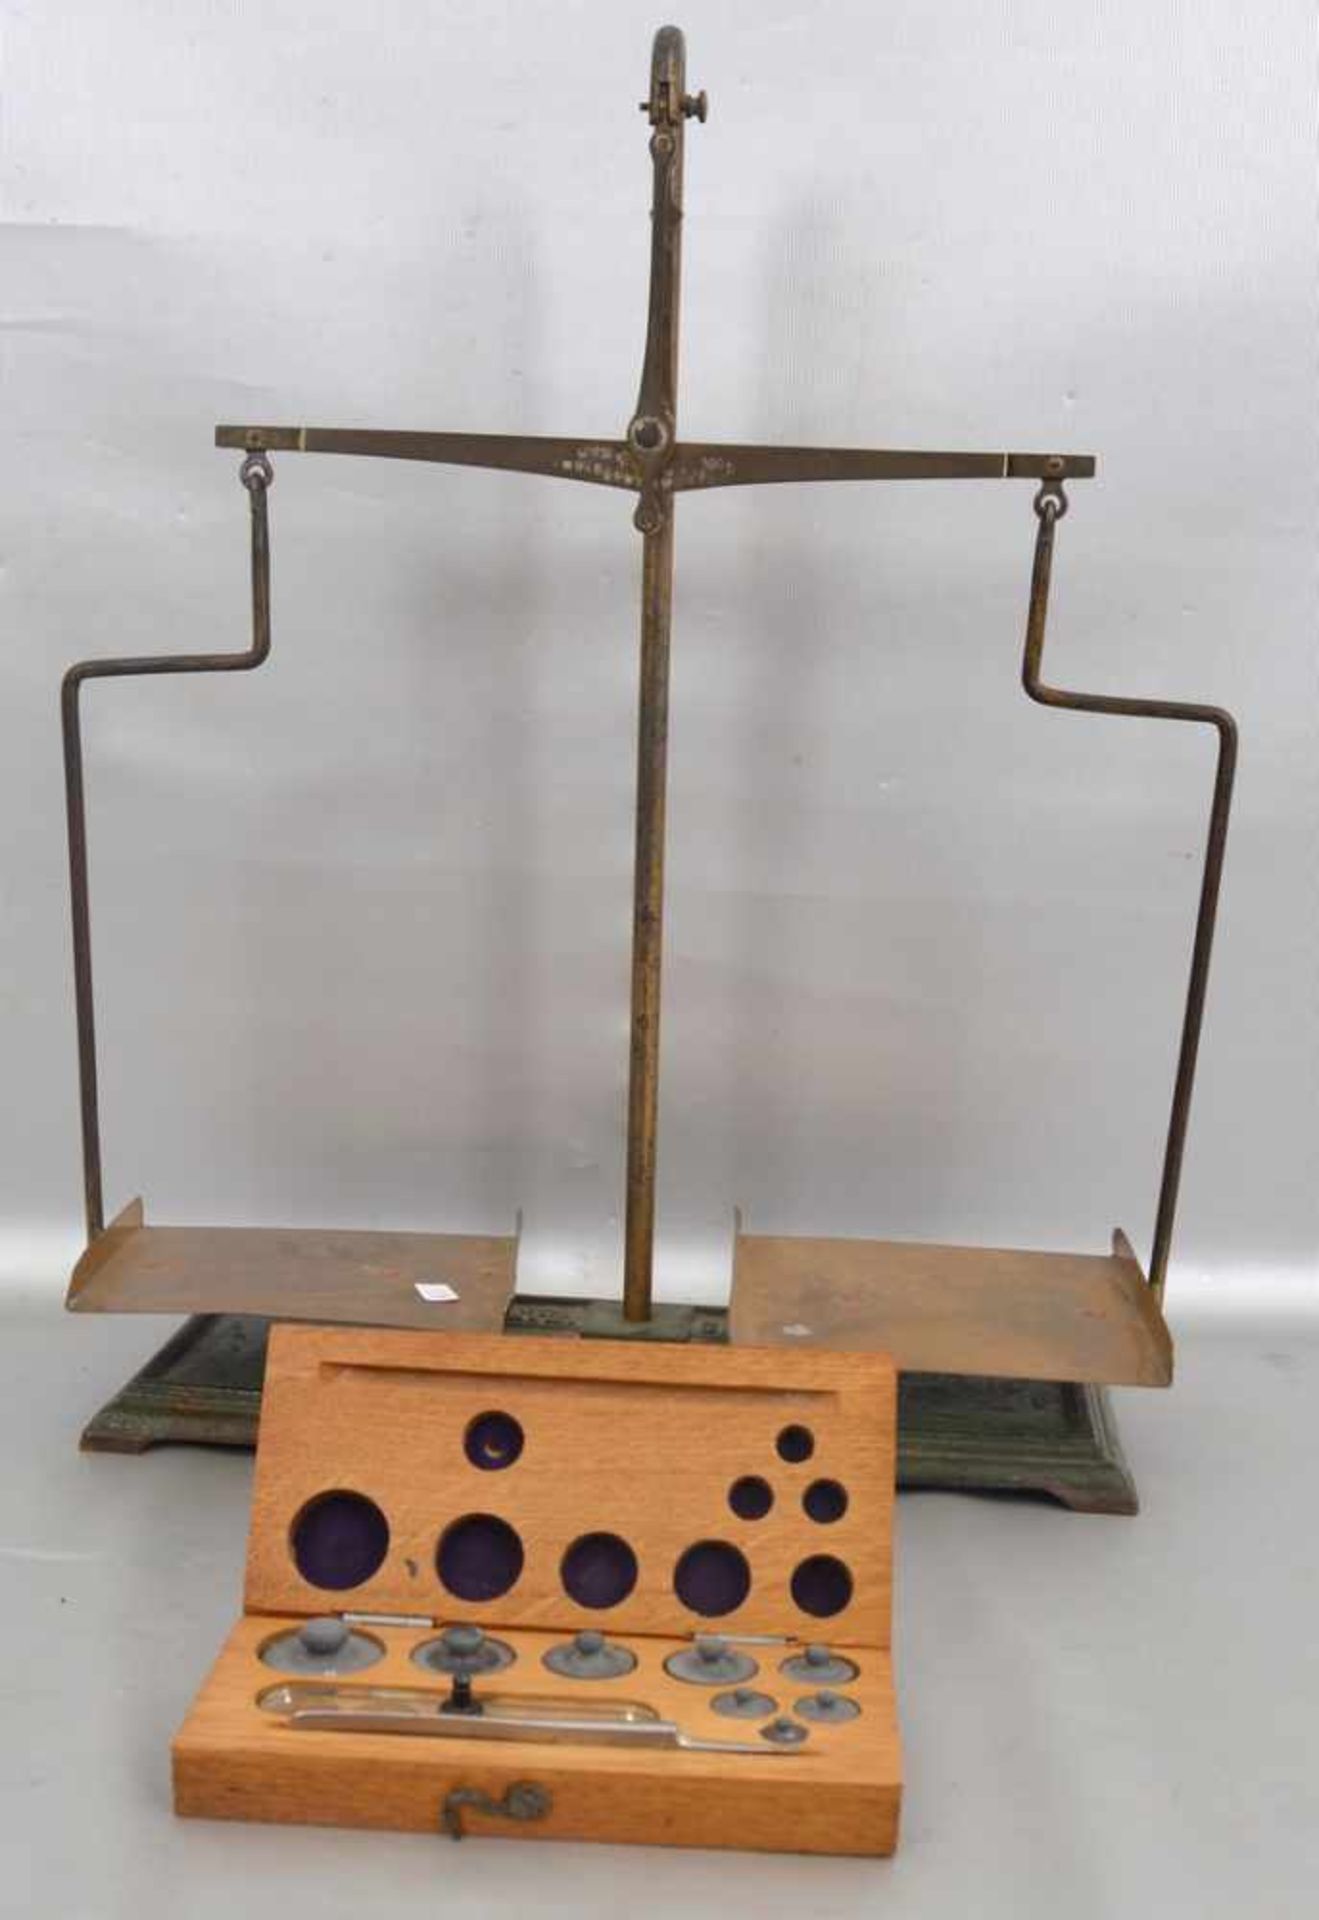 Apothekenwaage mit GewichtssatzMessing und Eisen, rechteckiger Fuß und Schalen, H 41 cm,